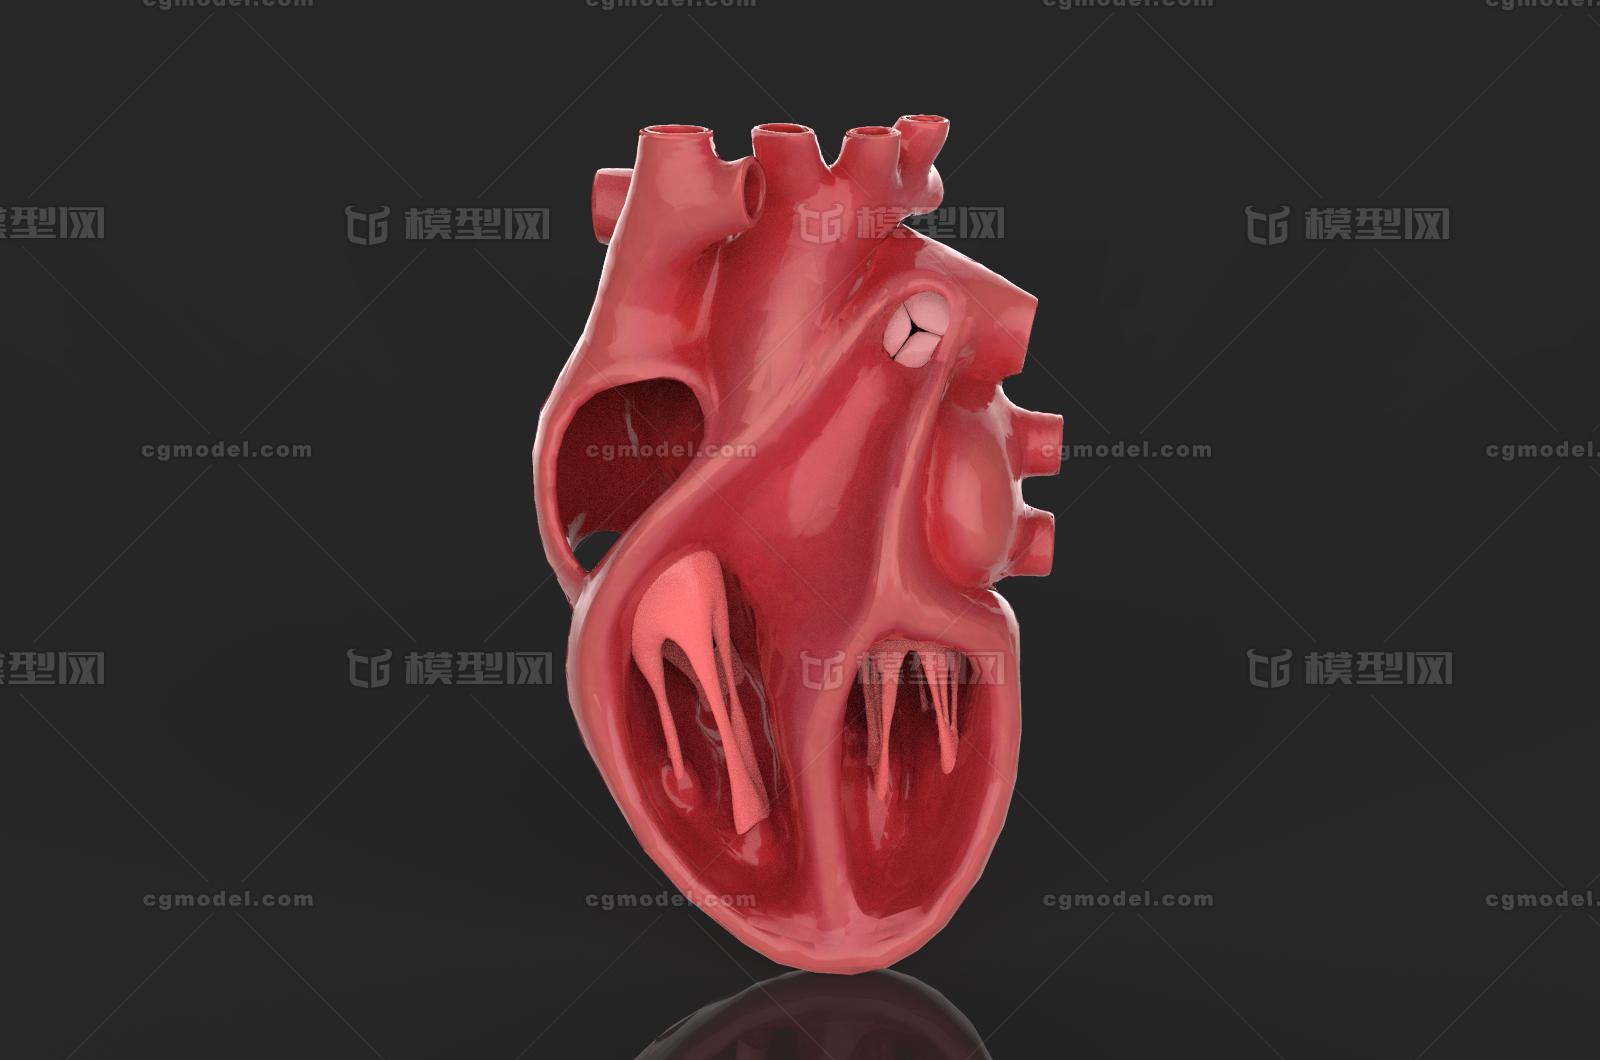 心脏剖面 人体解剖 器官切片 医学器官 人体器官 医学模型 4k纹理